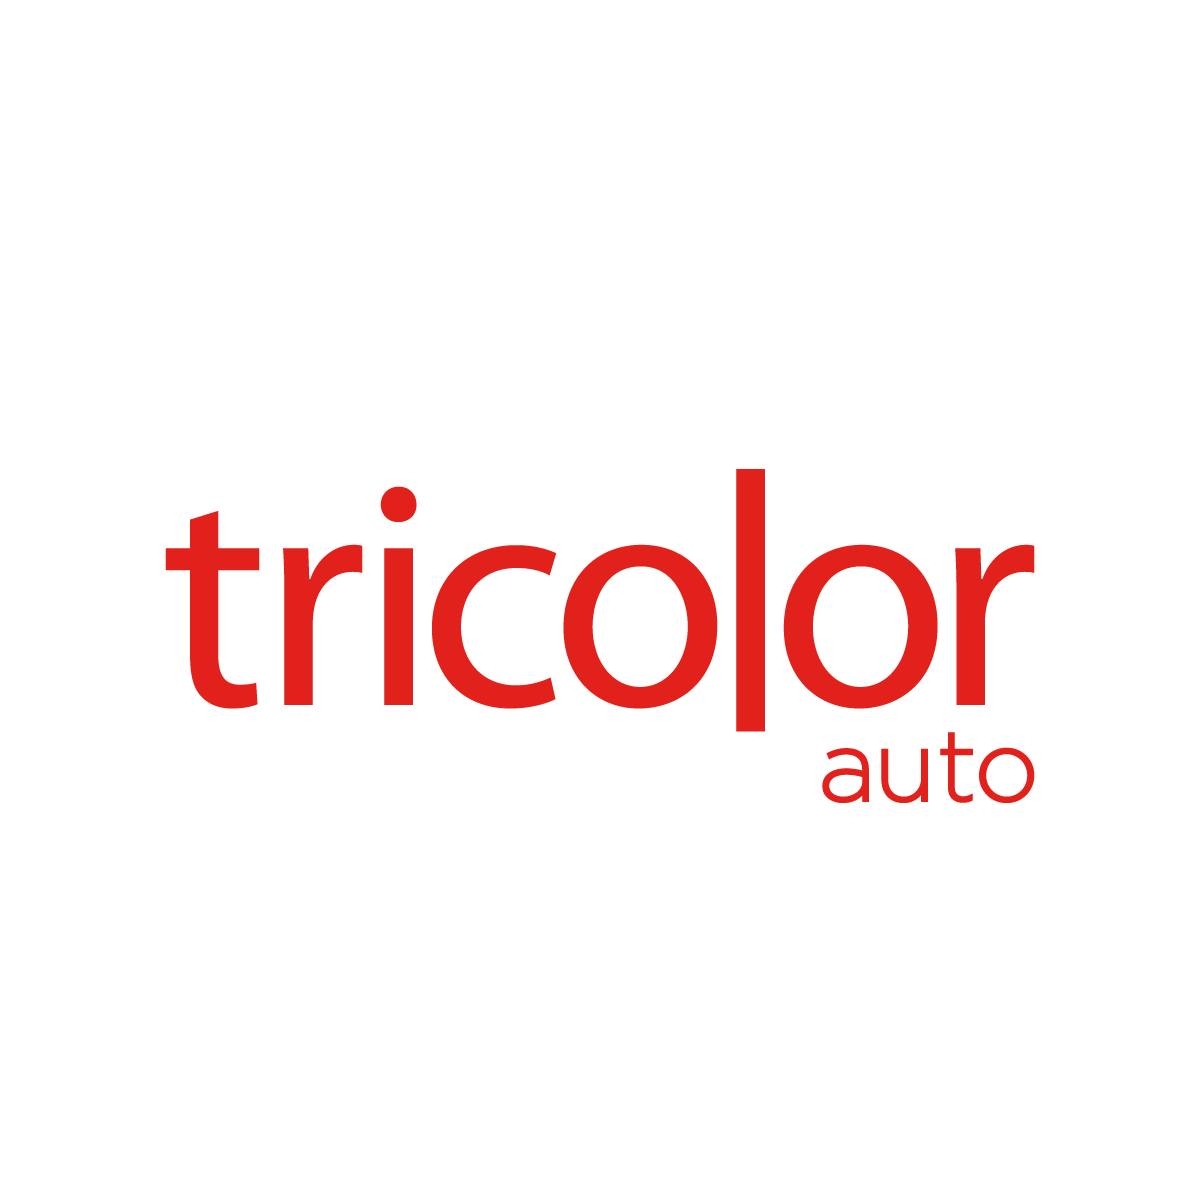 Tricolor Auto